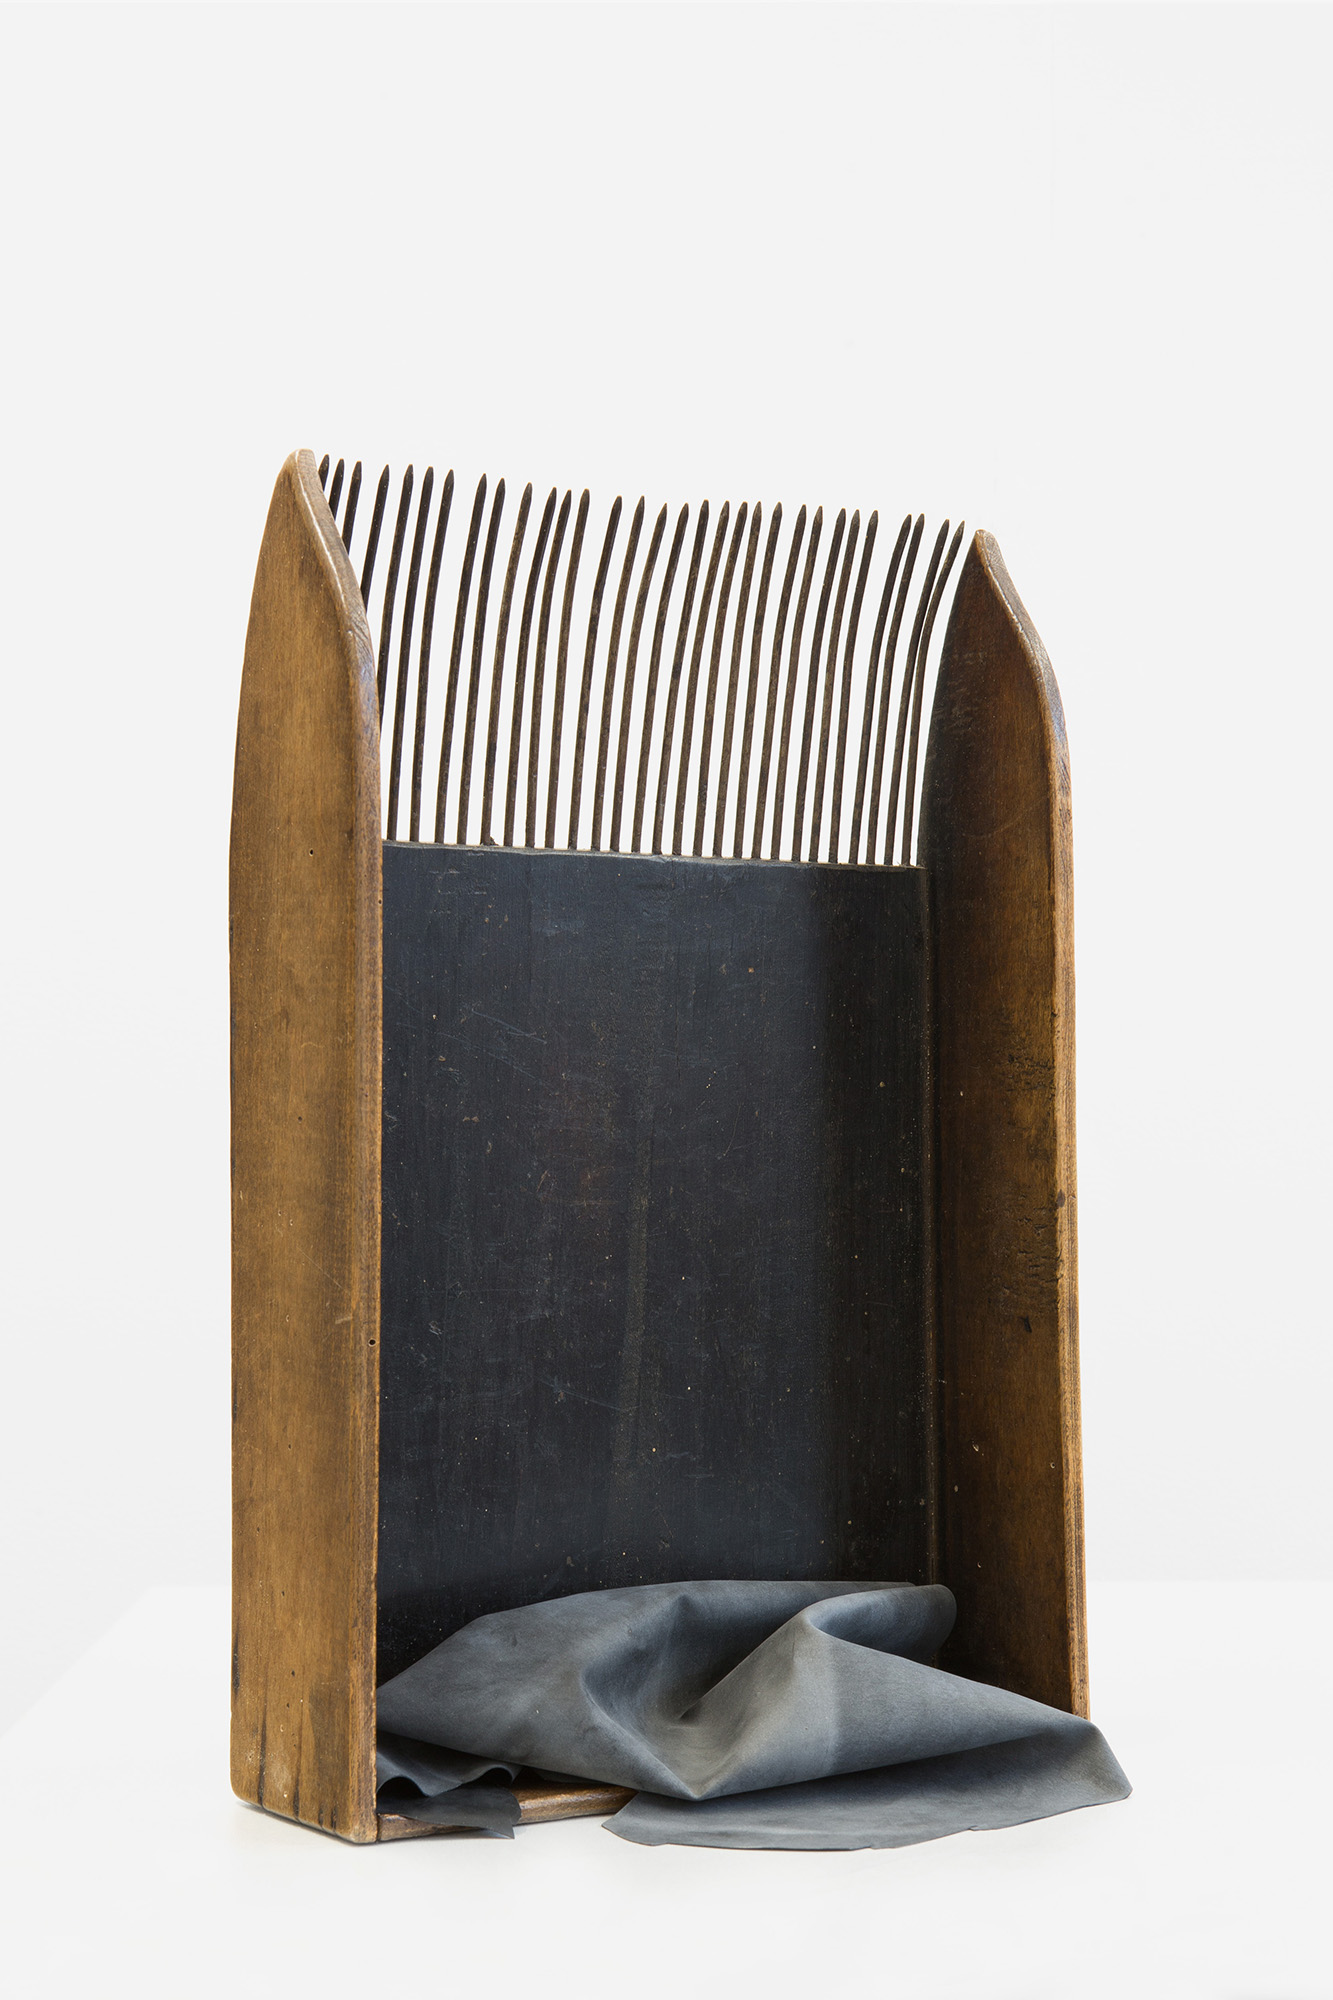 Maya Balcioglu Untitled (2019) Latex on agricultural tool, 38 cm x 25 cm x 8 cm